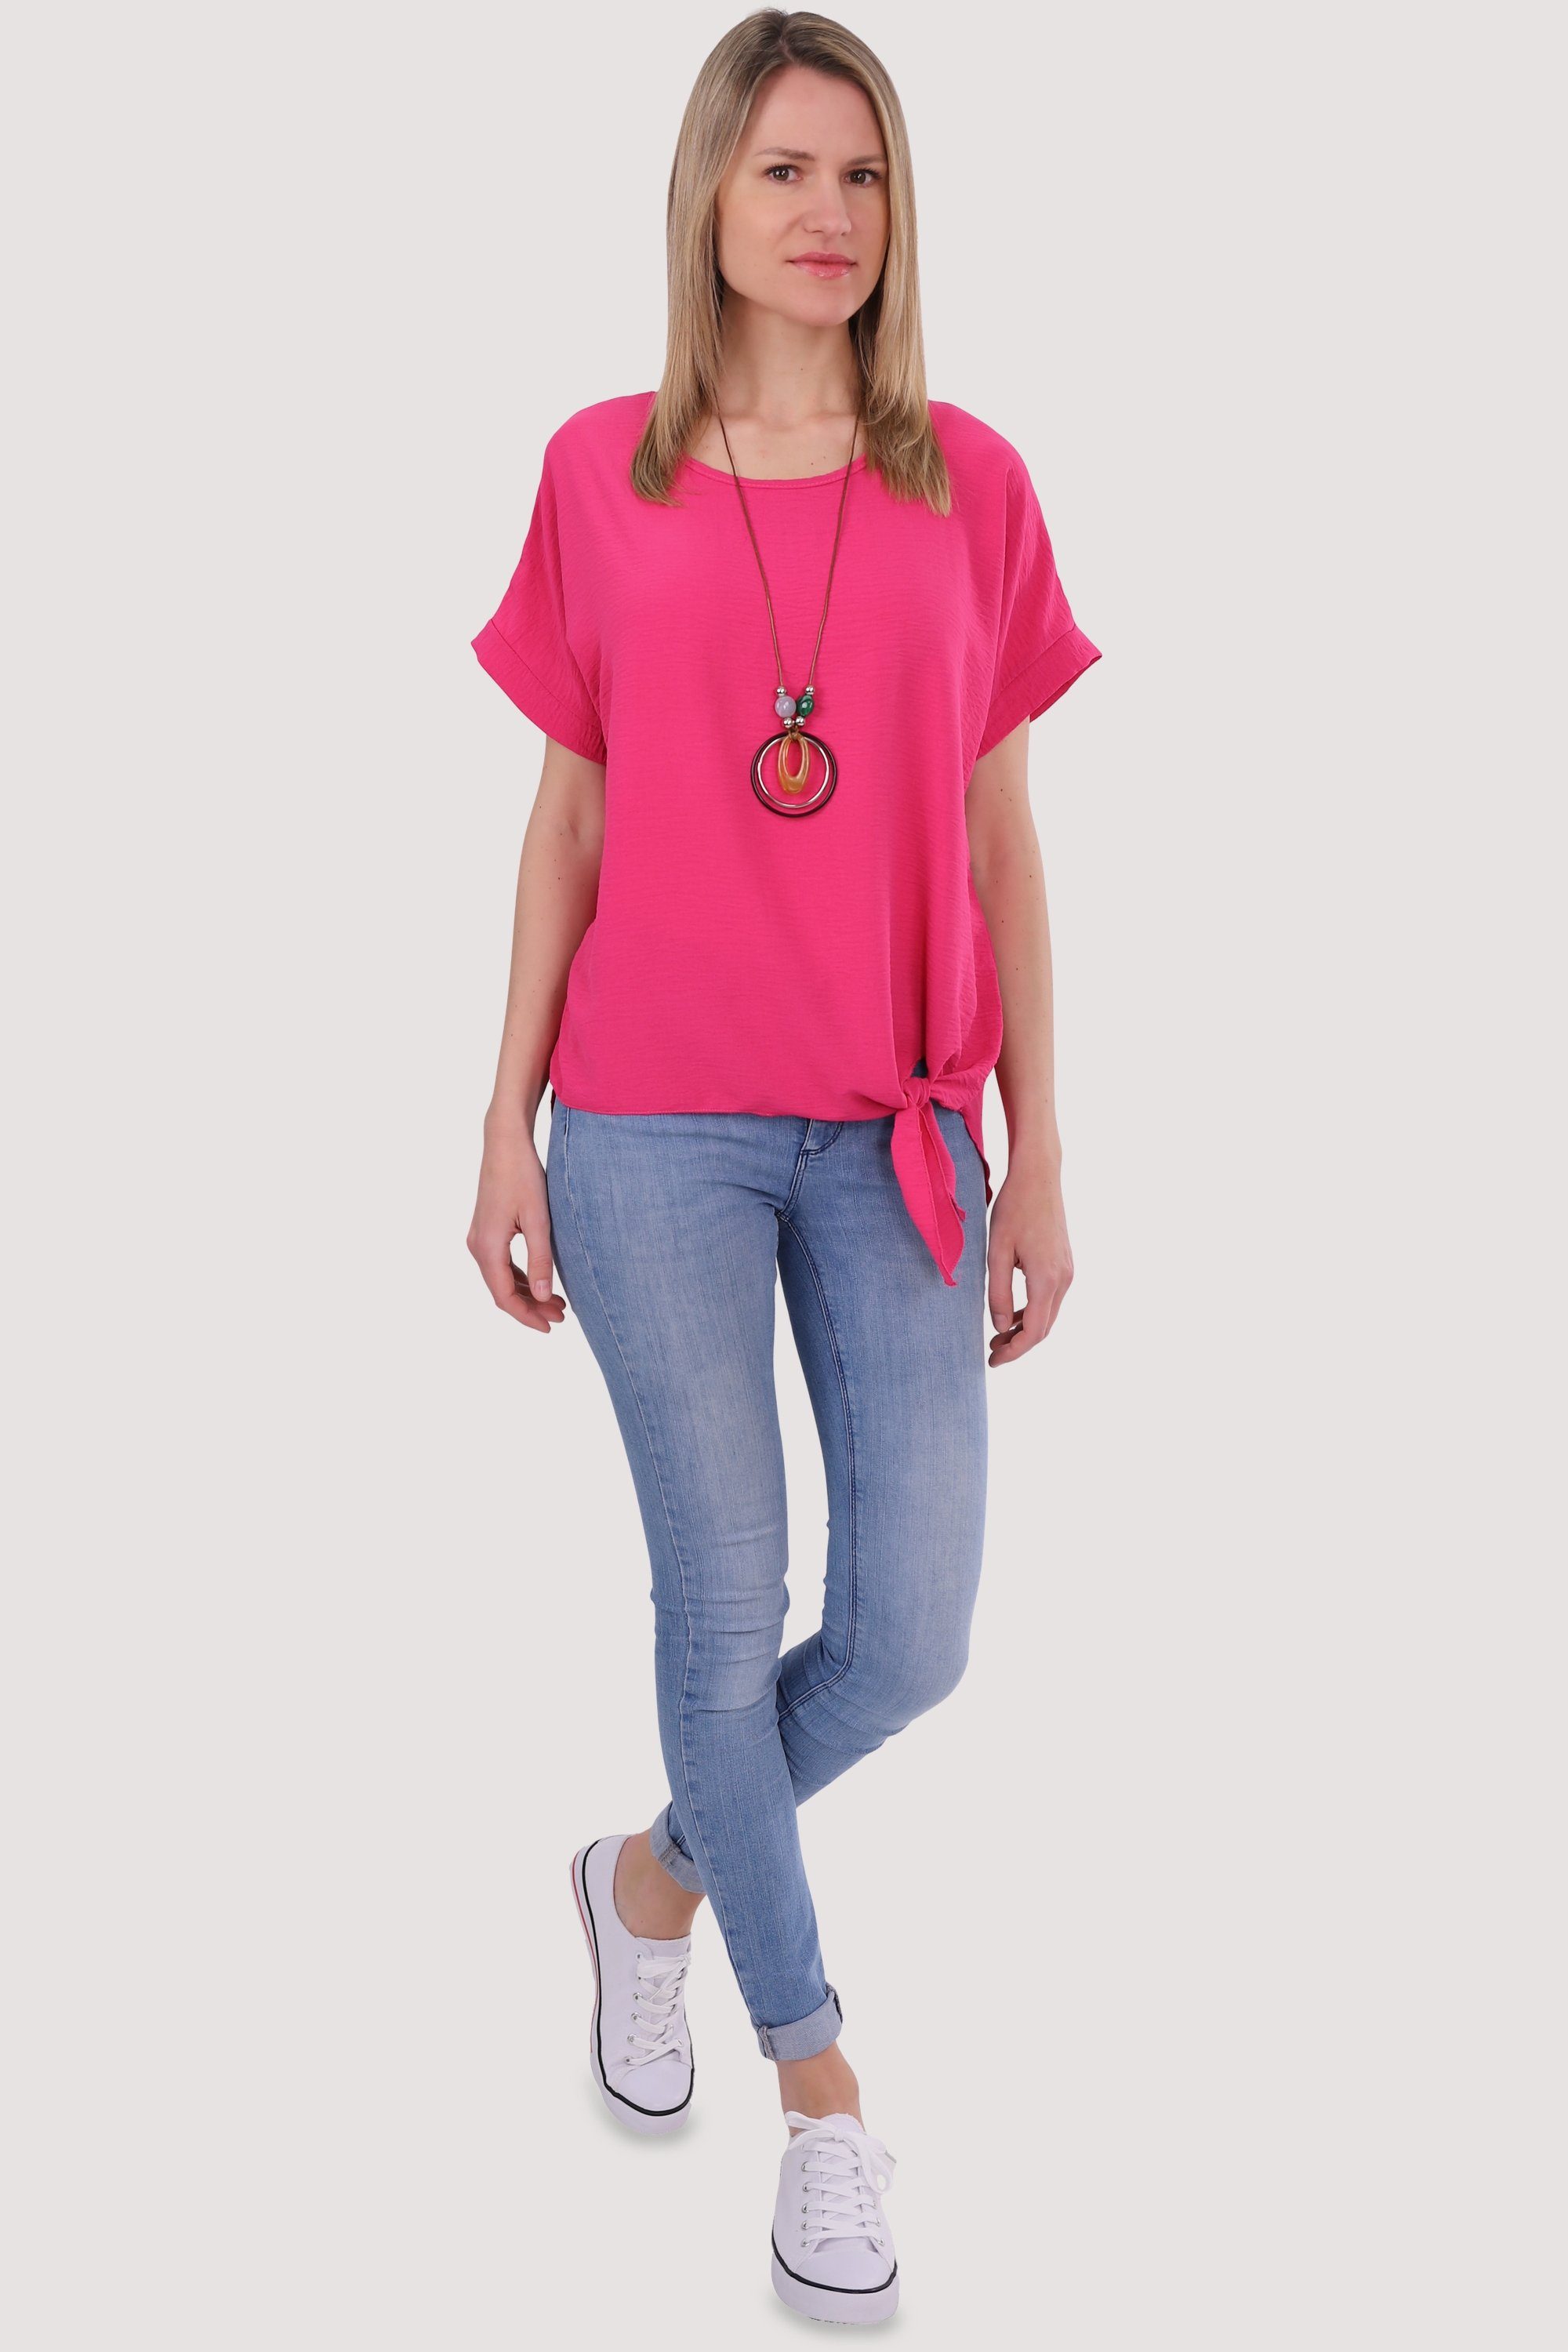 malito more than fashion Kette Blusenshirt mit 10508 Bindeknoten Einheitsgröße und pink